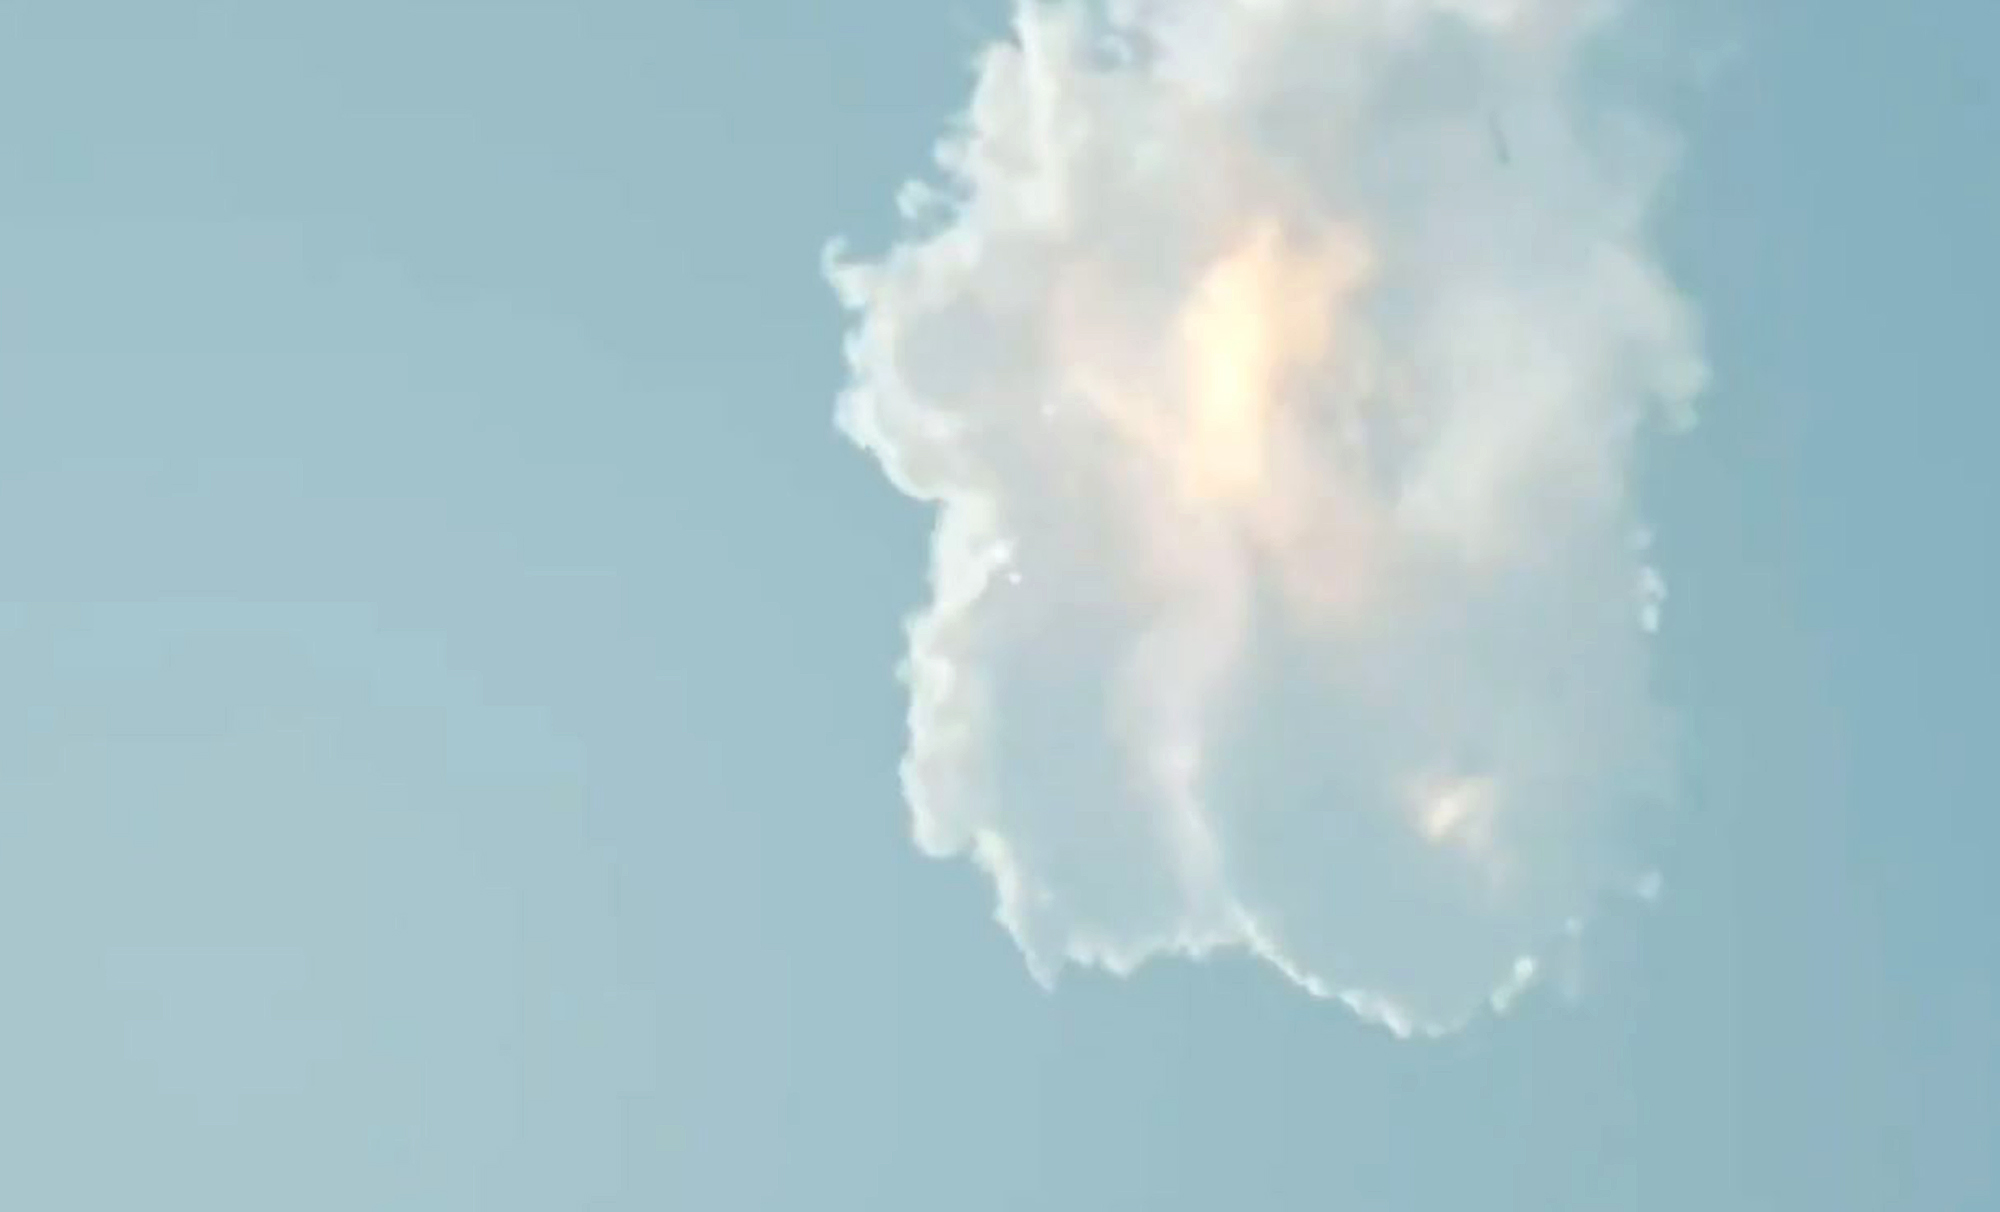 【速報】スペースX、「スターシップ」打ち上げ後に爆発